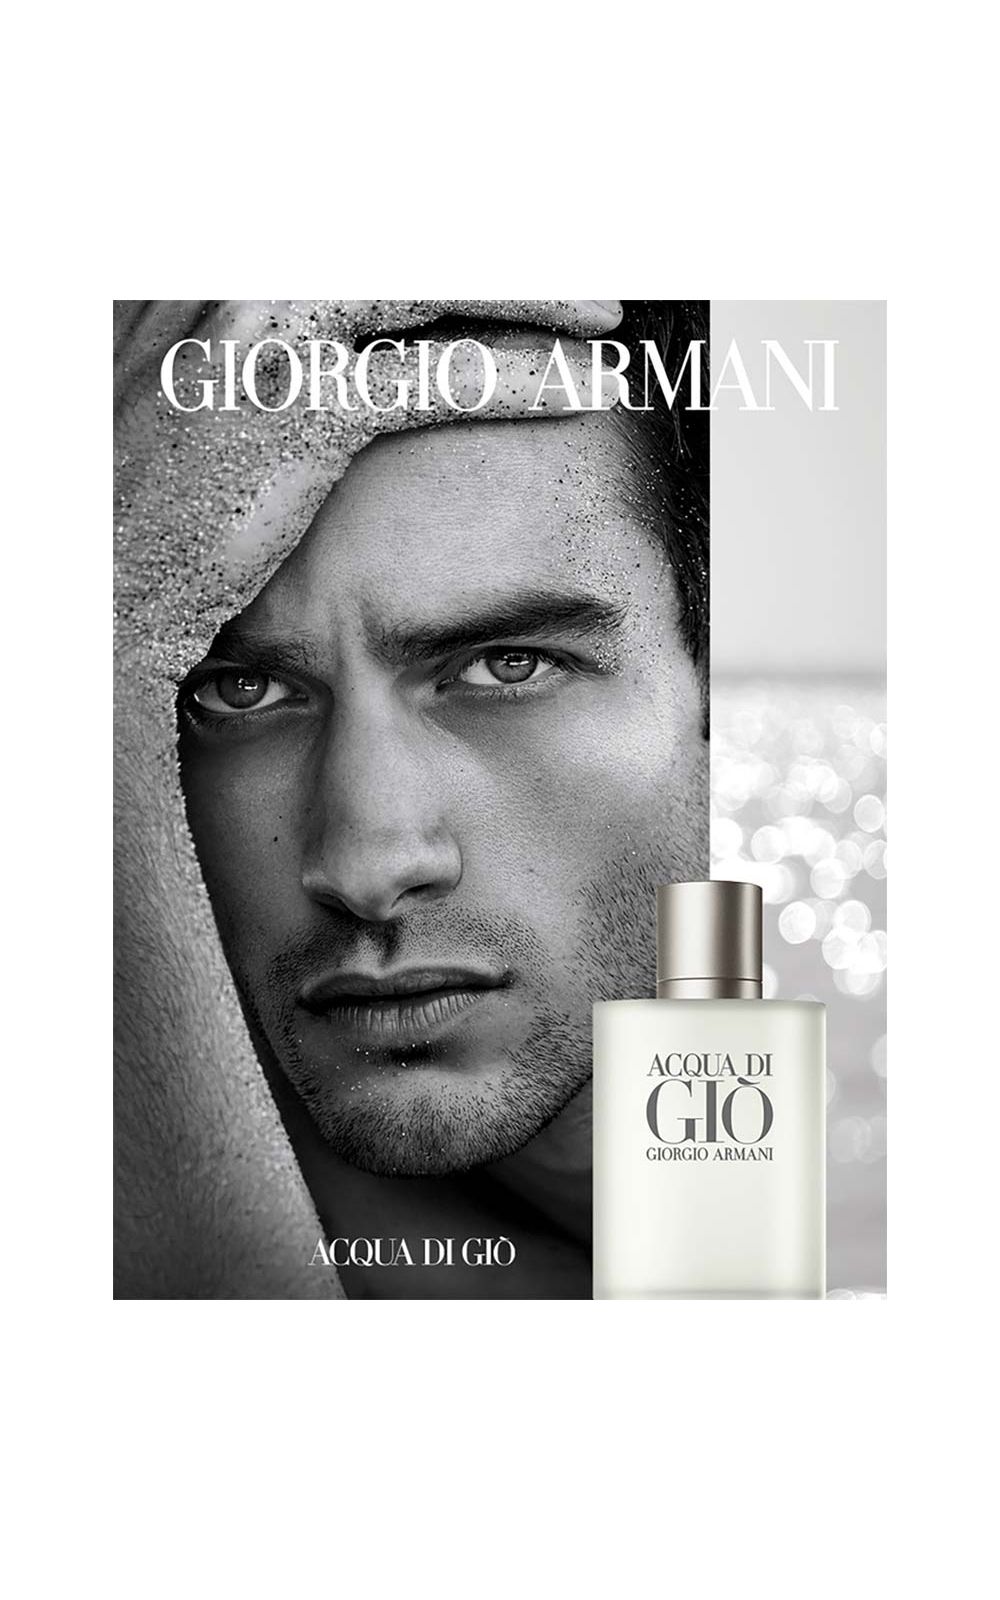 Foto 7 - Acqua Di Giò Homme Giorgio Armani - Perfume Masculino - Eau de Toilette - 100ml